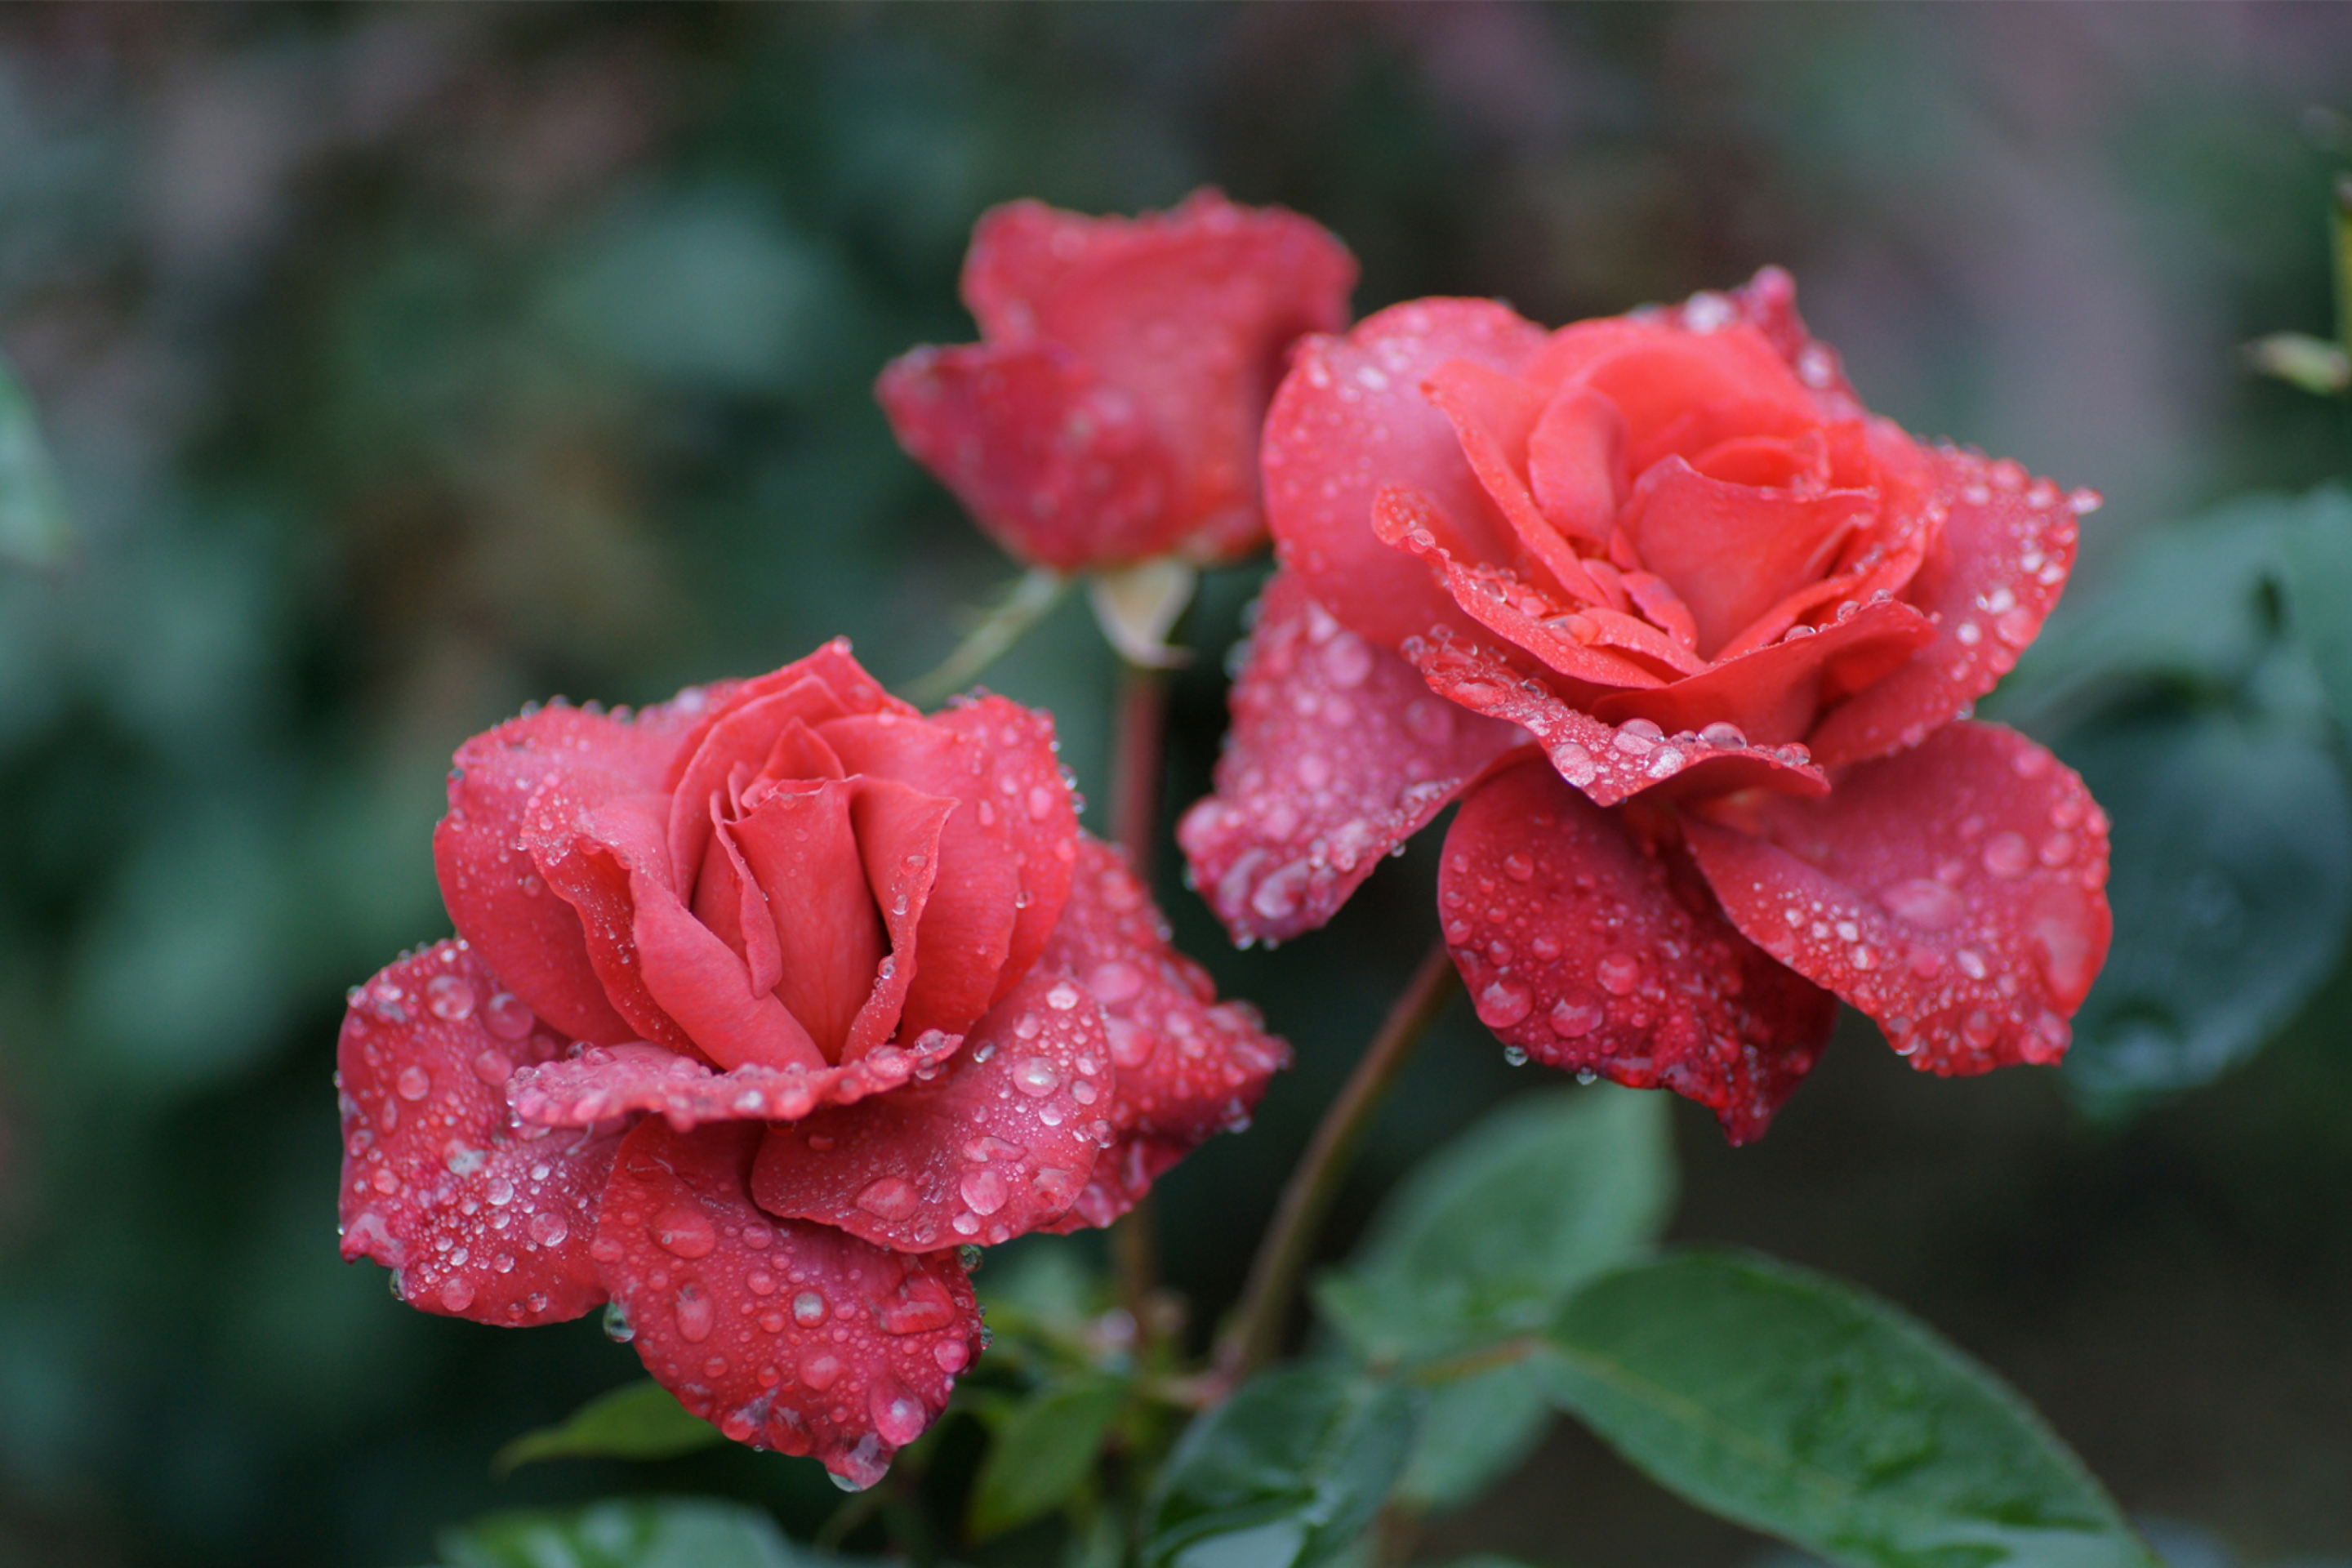 Sfondi Dew Drops On Beautiful Red Roses 2880x1920